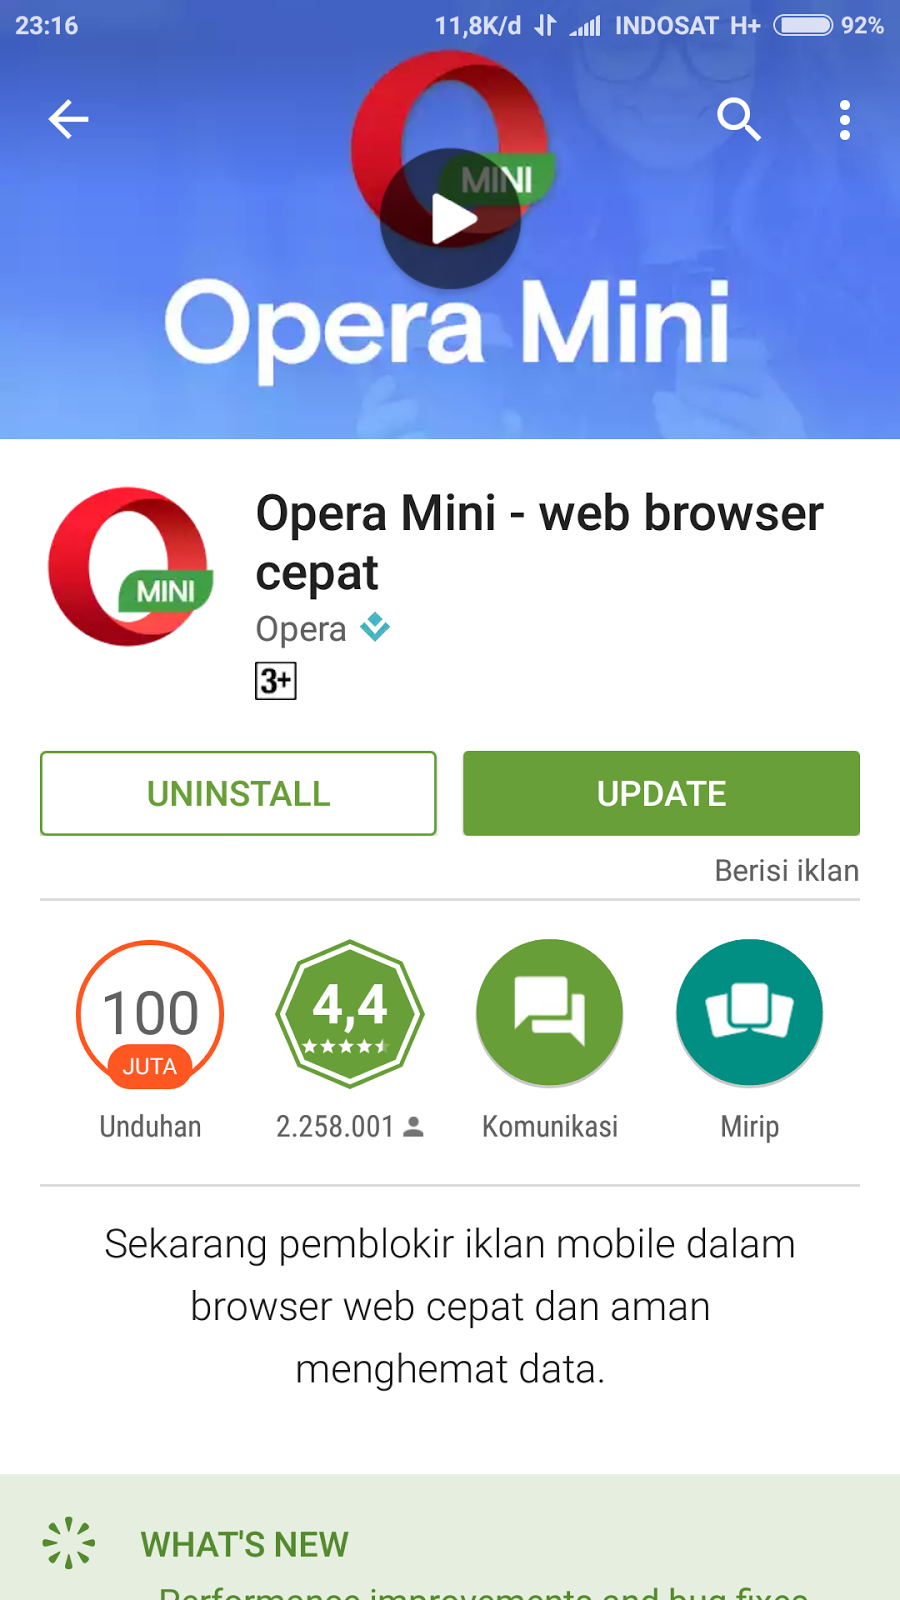 Download Aplikasi Opera Mini Terbaru 2017 Versi 4, 5, 6, 7, 8 Contoh Oliv